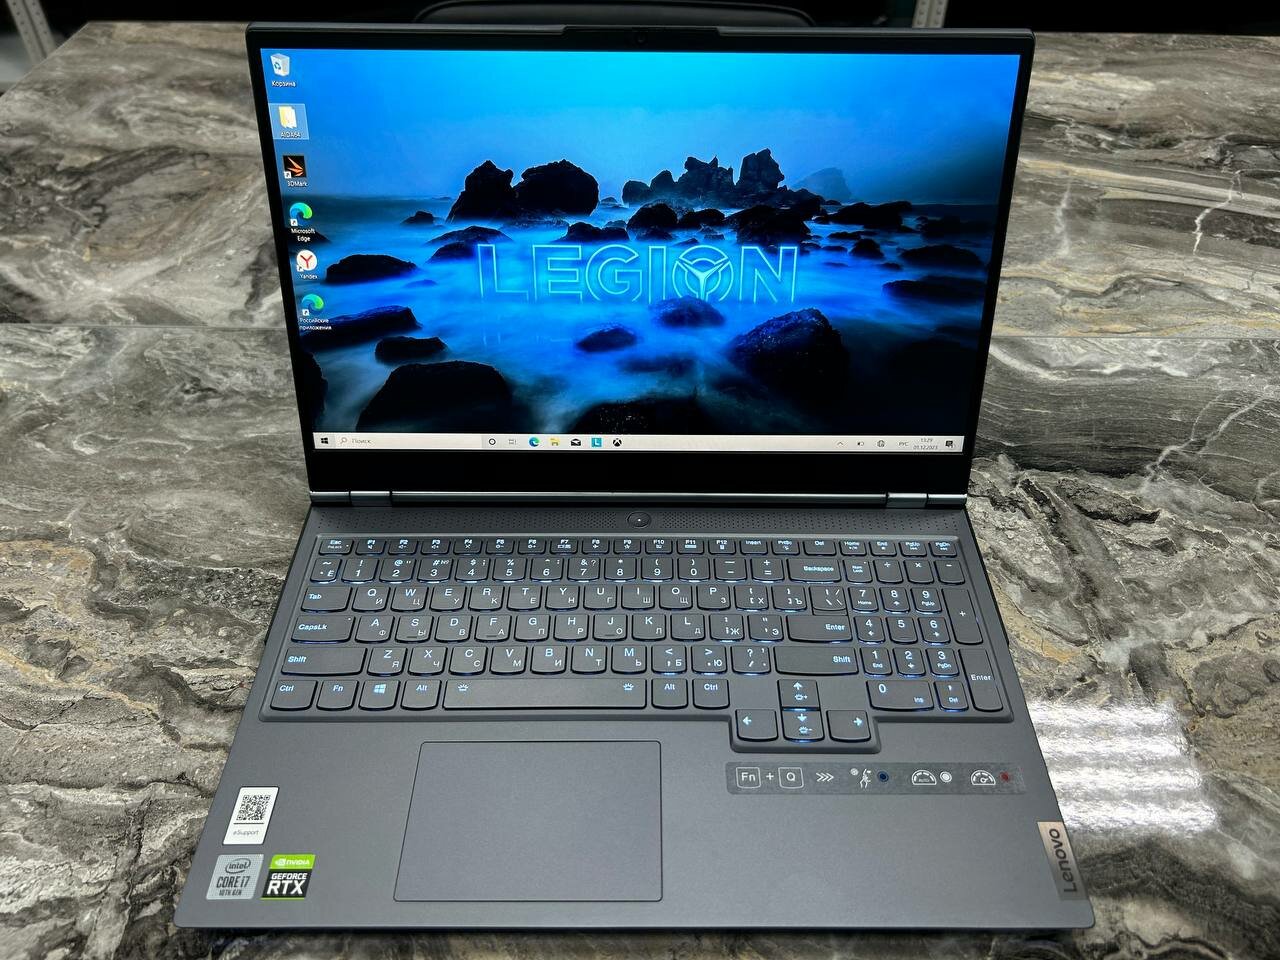 Ноутбук Lenovo Legion 7-15IMH05. Конфигурация: i7-10750H/16GB/256GB+512GB/RTX 2080 8GB/Win10/FHD 165hz/B1